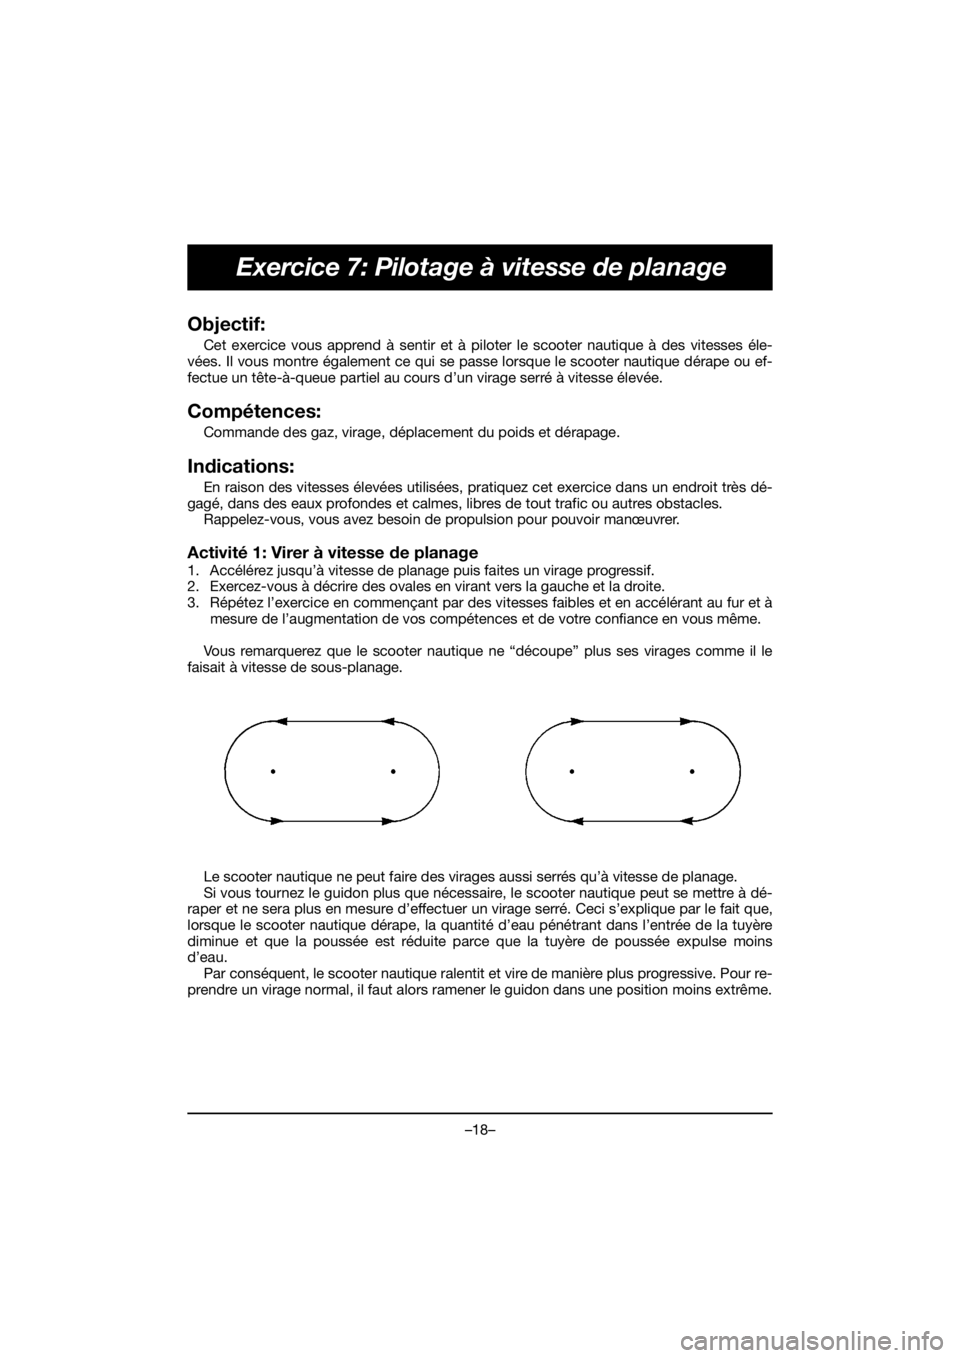 YAMAHA EX DELUXE 2019  Manuale de Empleo (in Spanish) –18–
Exercice 7: Pilotage à vitesse de planage
Objectif: 
Cet exercice vous apprend à sentir et à piloter le scooter nautique à des vitesses éle-
vées. Il vous montre également ce qui se pa